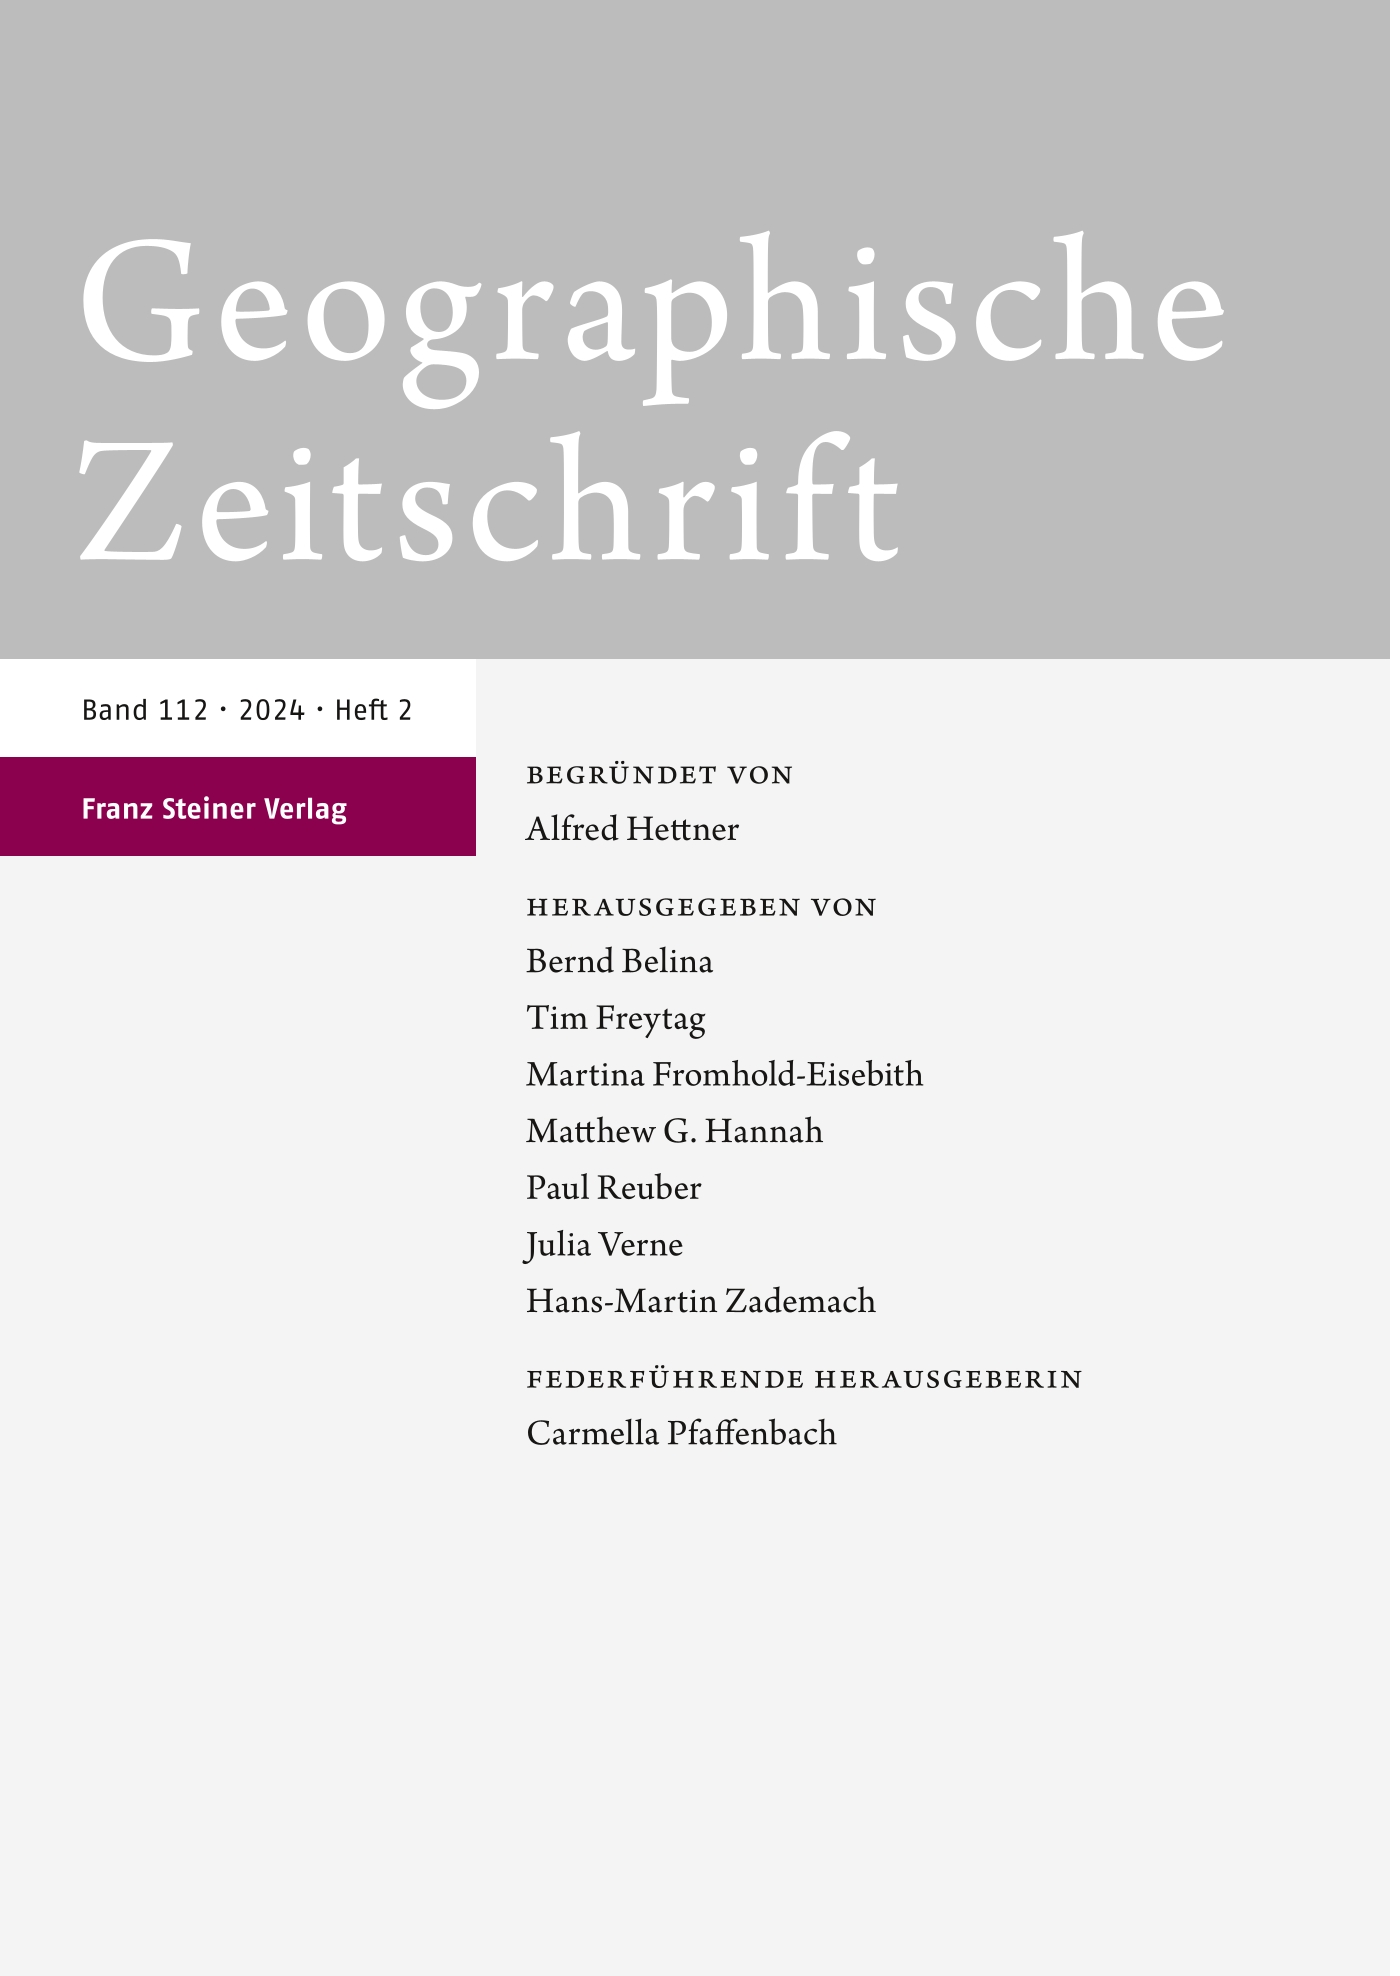 Geographische Zeitschrift - online